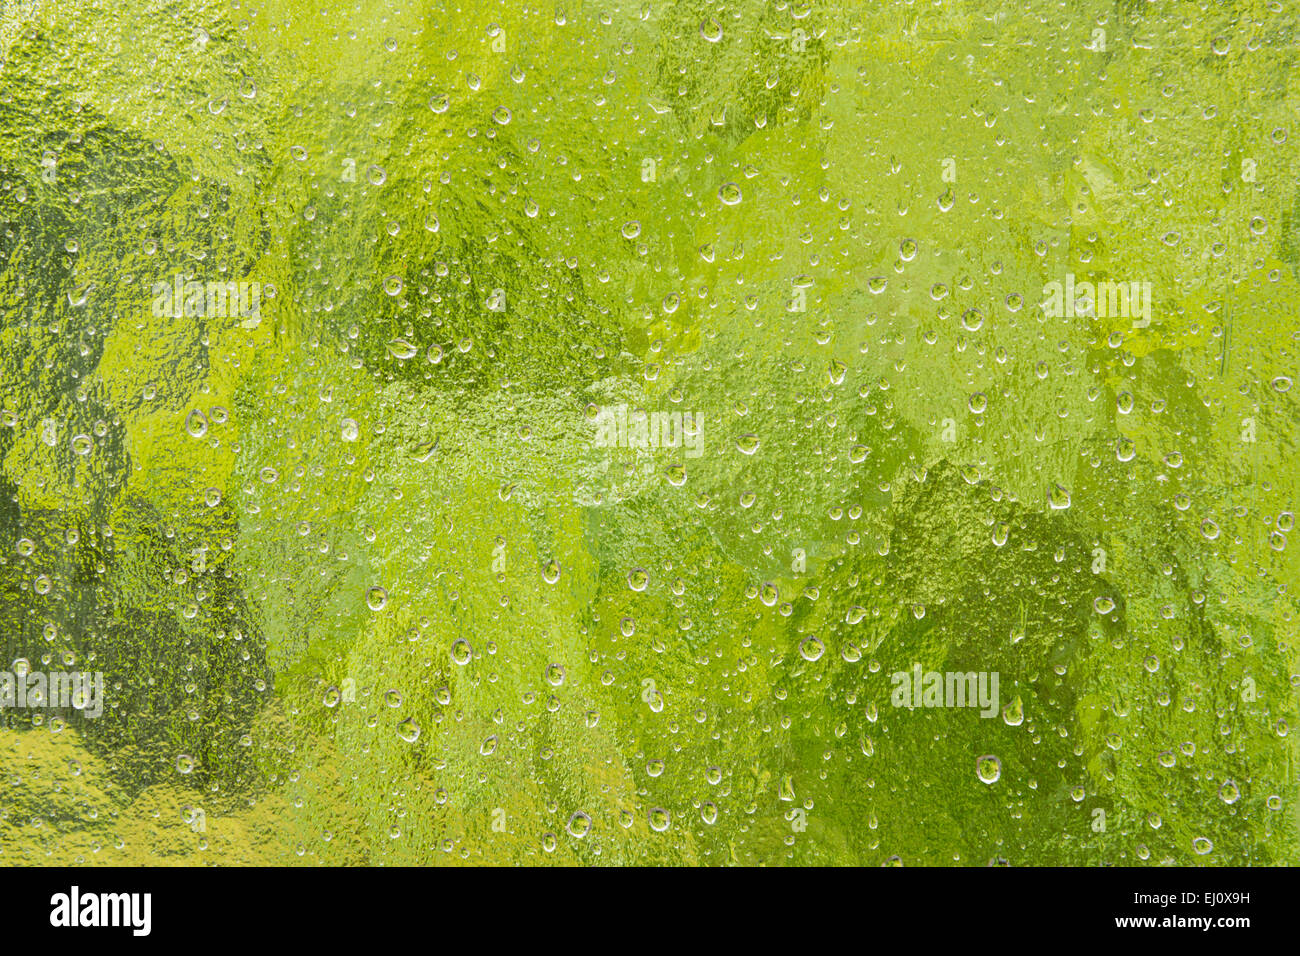 Fenêtre, de la fenêtre, personne, close-up, humide, les précipitations, la pluie, les gouttes de pluie, la météo, la pluie, l'eau, goutte d'eau Banque D'Images